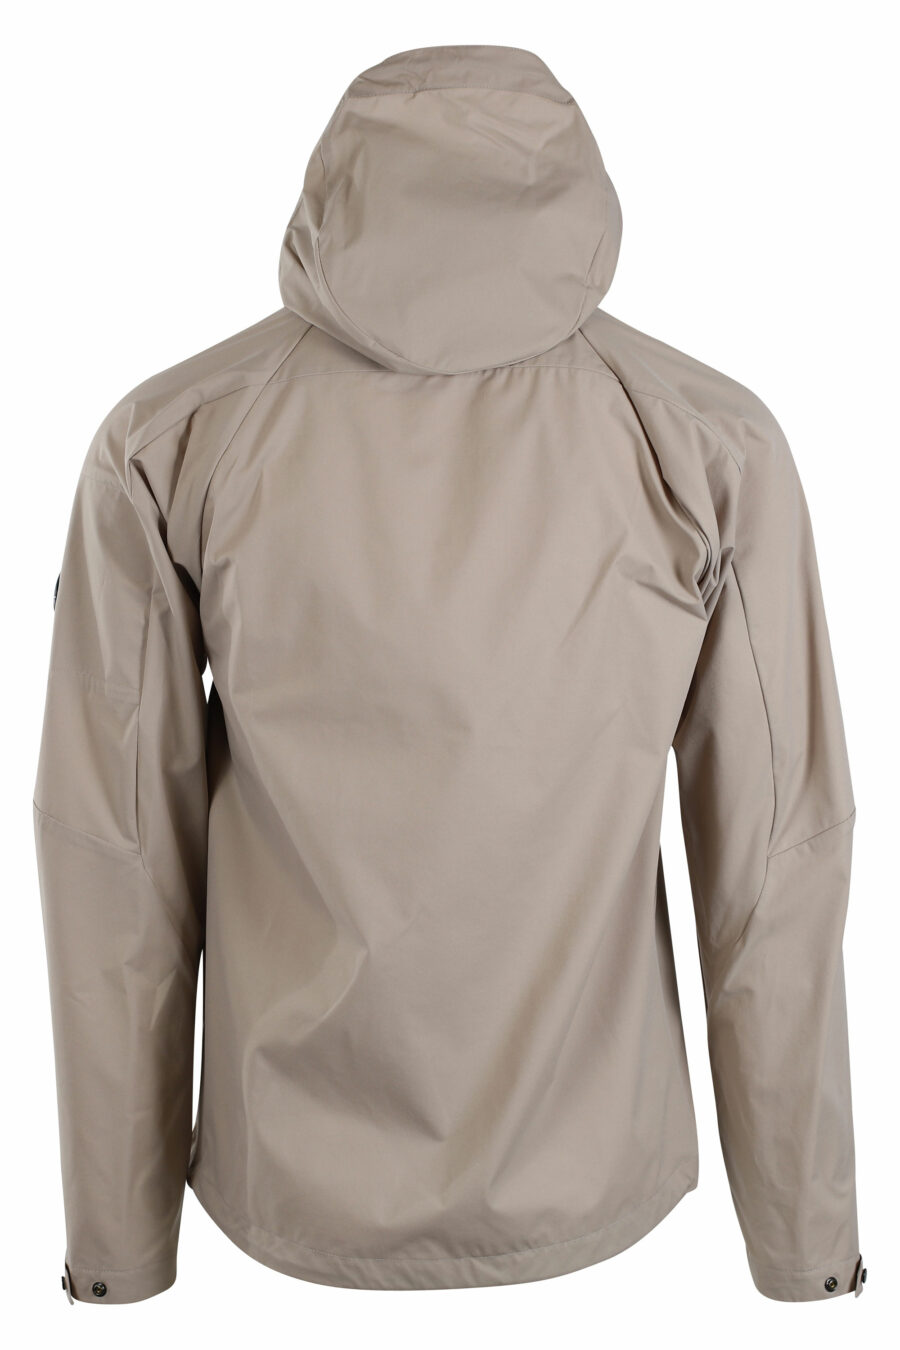 Beigefarbene "pro-tek" Jacke mit Kapuze und kreisförmigem Mini-Logo an der Seite - IMG 2663